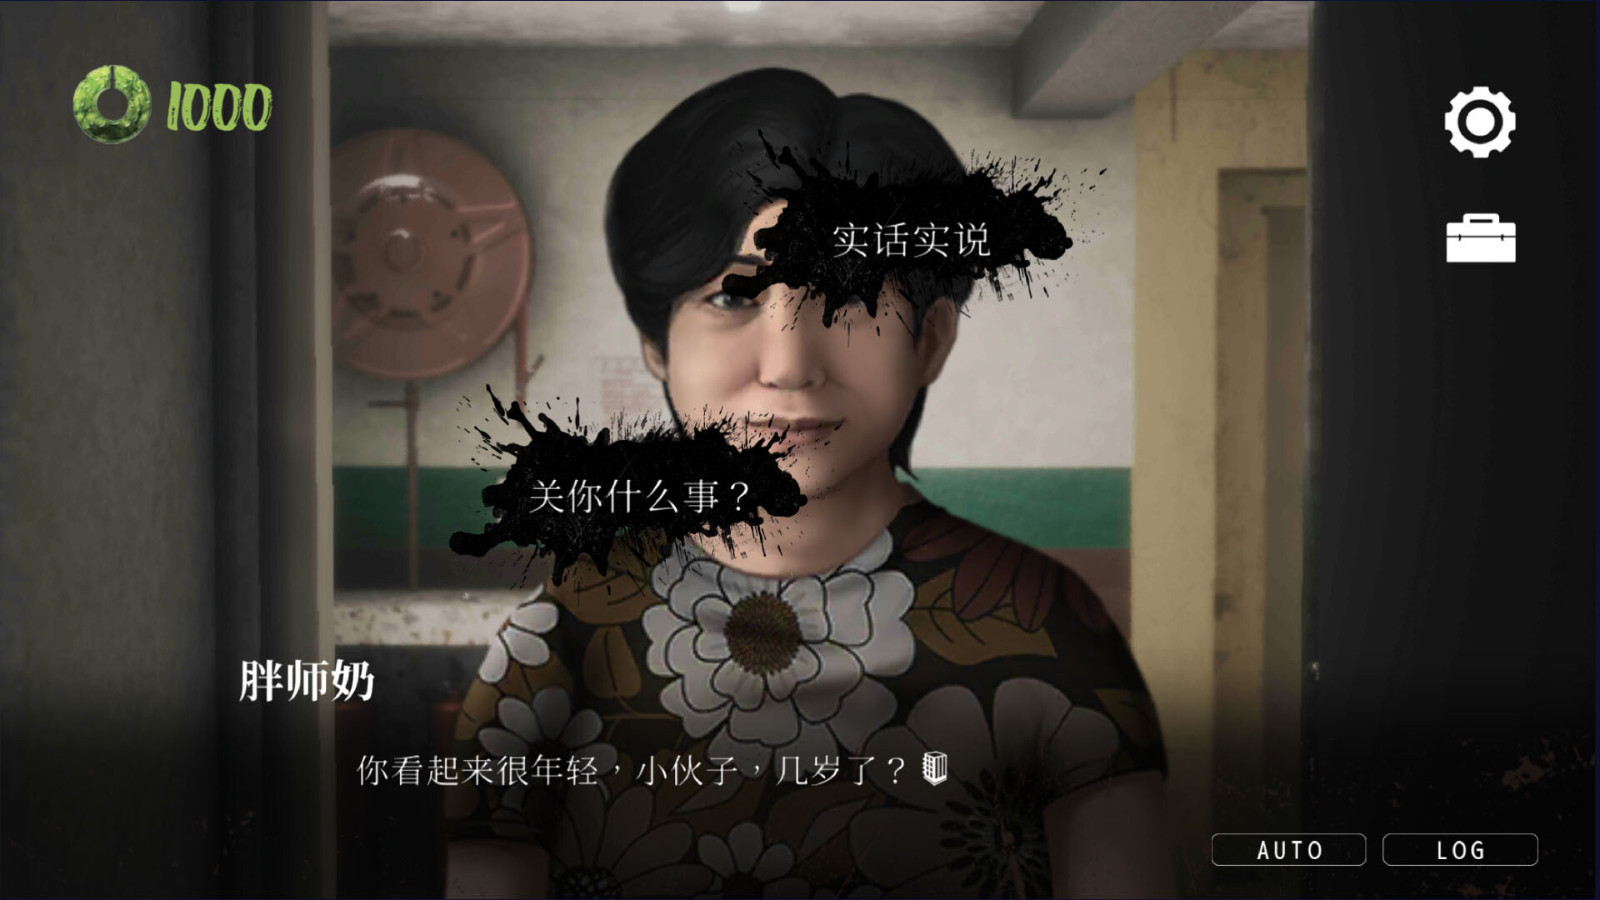 劇情遊戲《猛鬼大廈》STEAM頁面上線 支持簡繁體中文